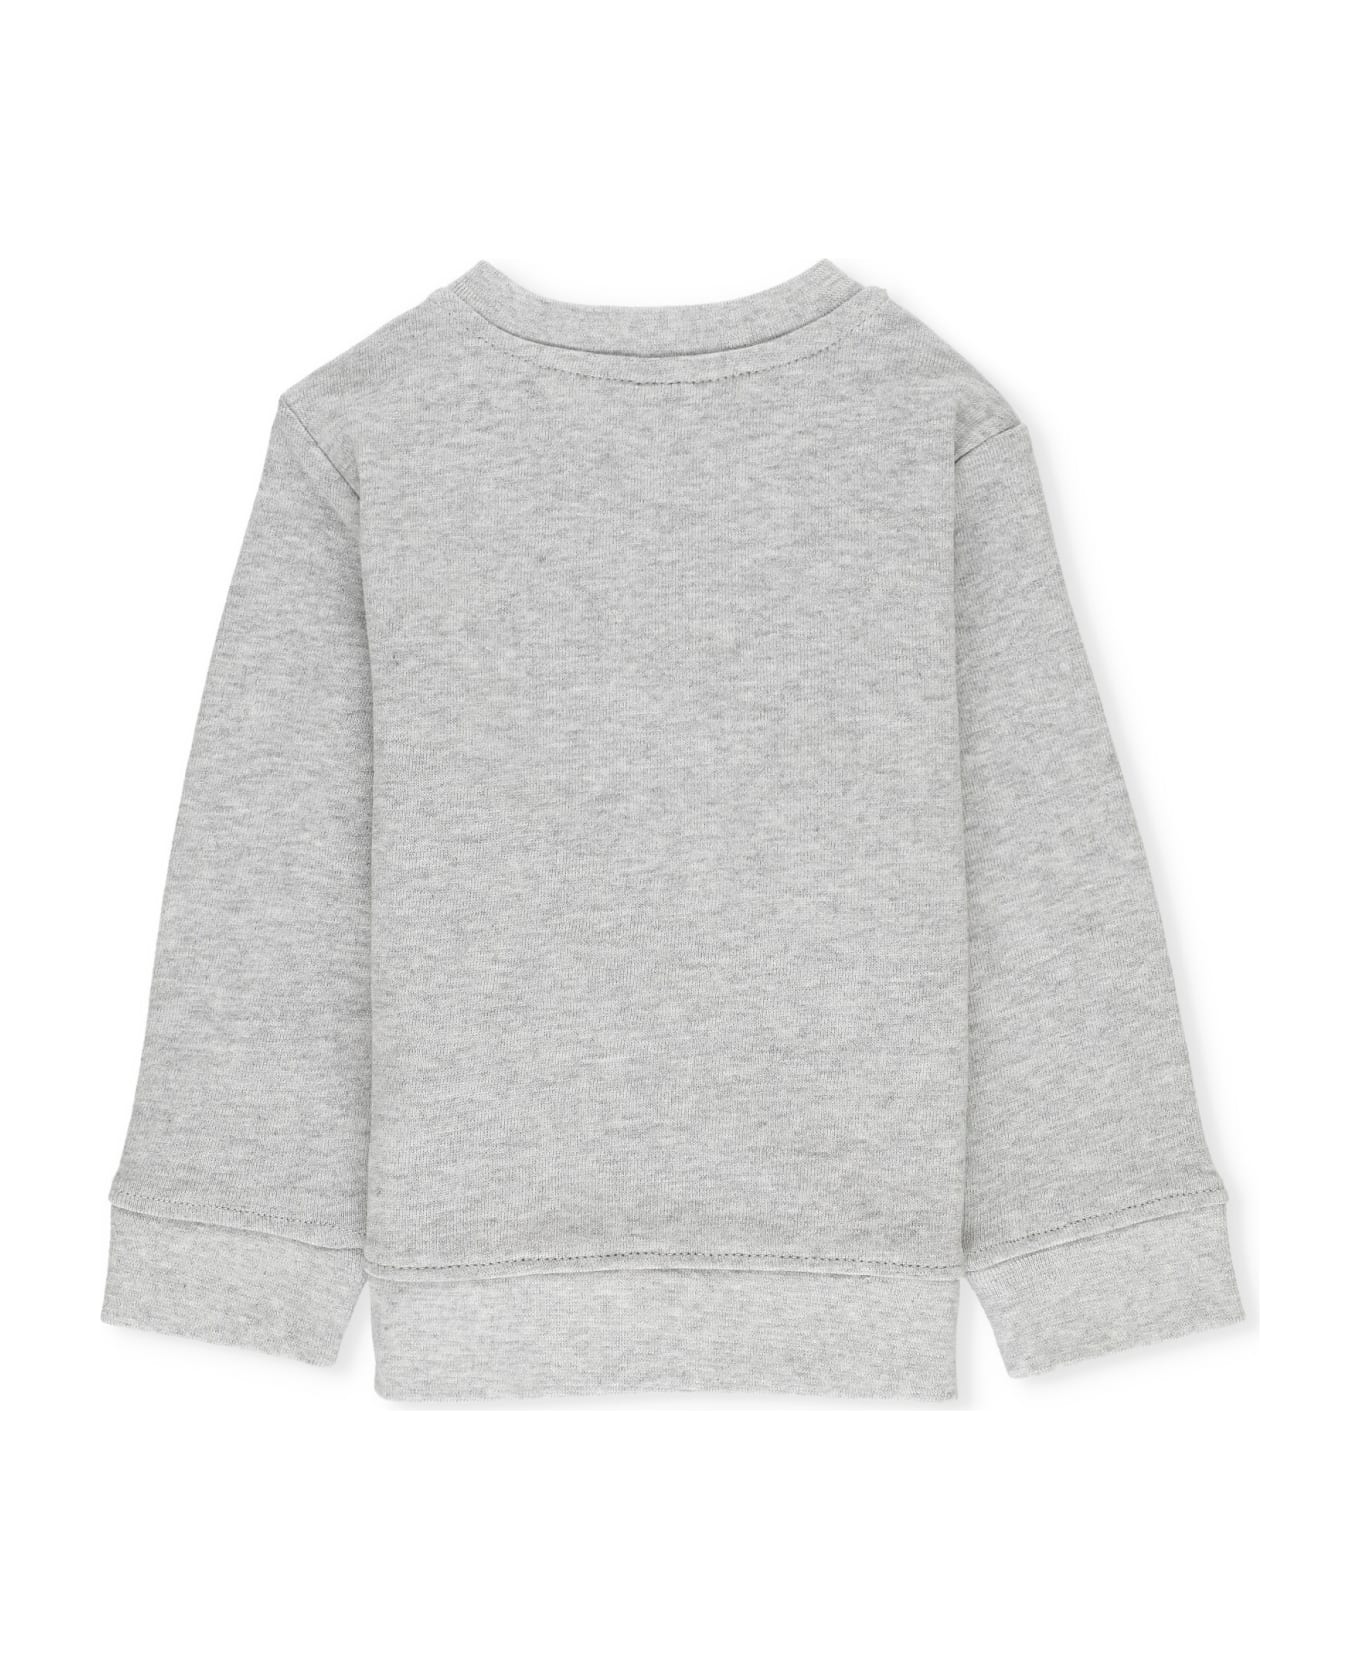 Stella McCartney Kids Sweatshirt With Print - Grey ニットウェア＆スウェットシャツ